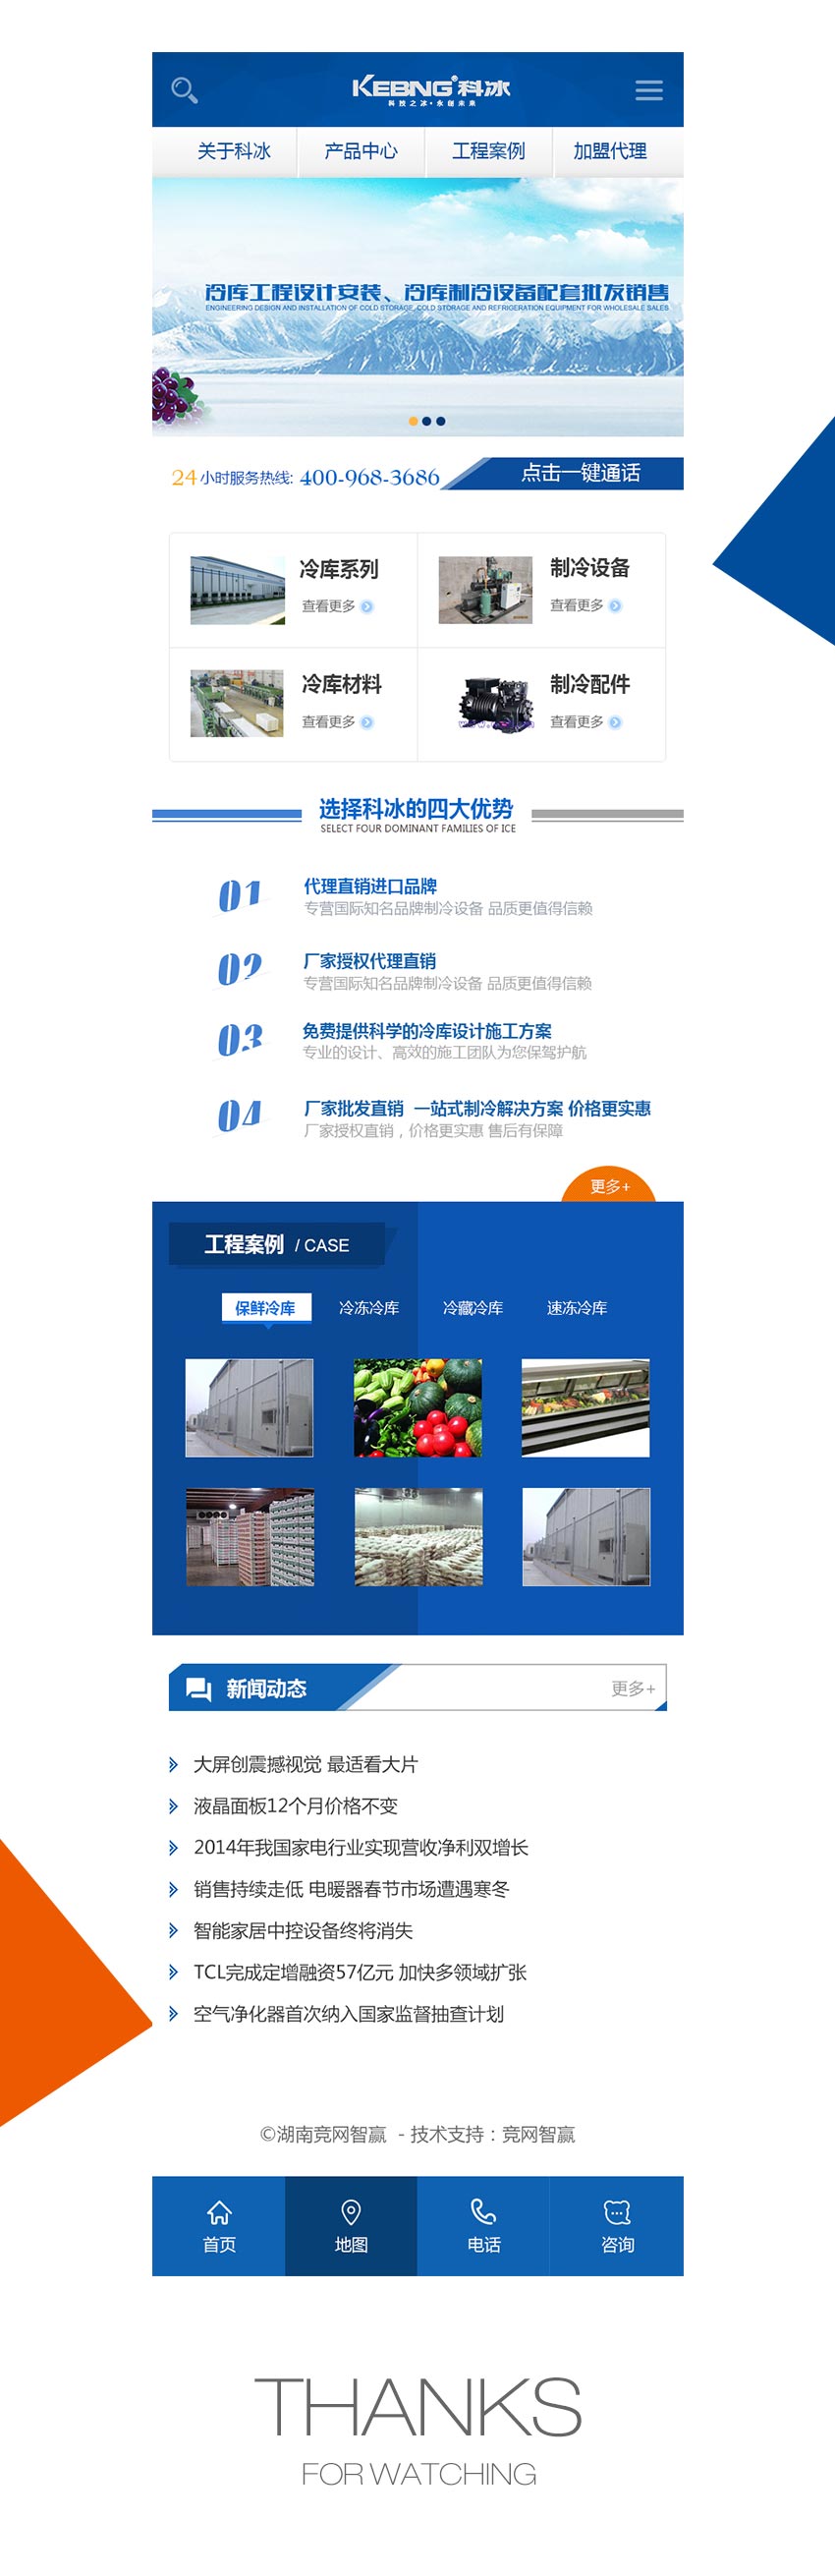 手机网站成功案例-湖南长沙科冰制冷公司